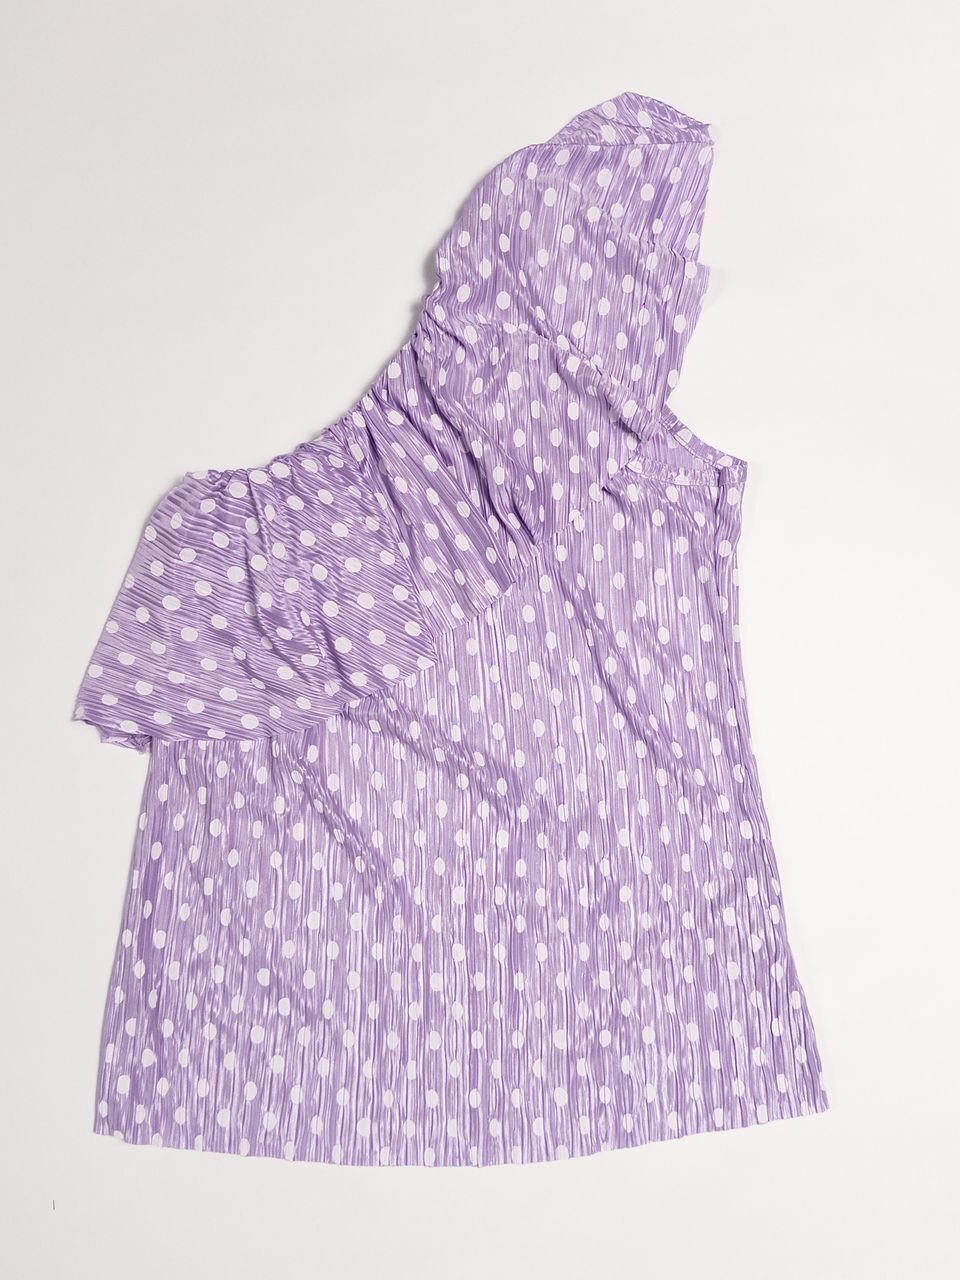 Блуза с открытым плечом цвет сиреневый в горох размер UK 14 (rus 48) BY VERY